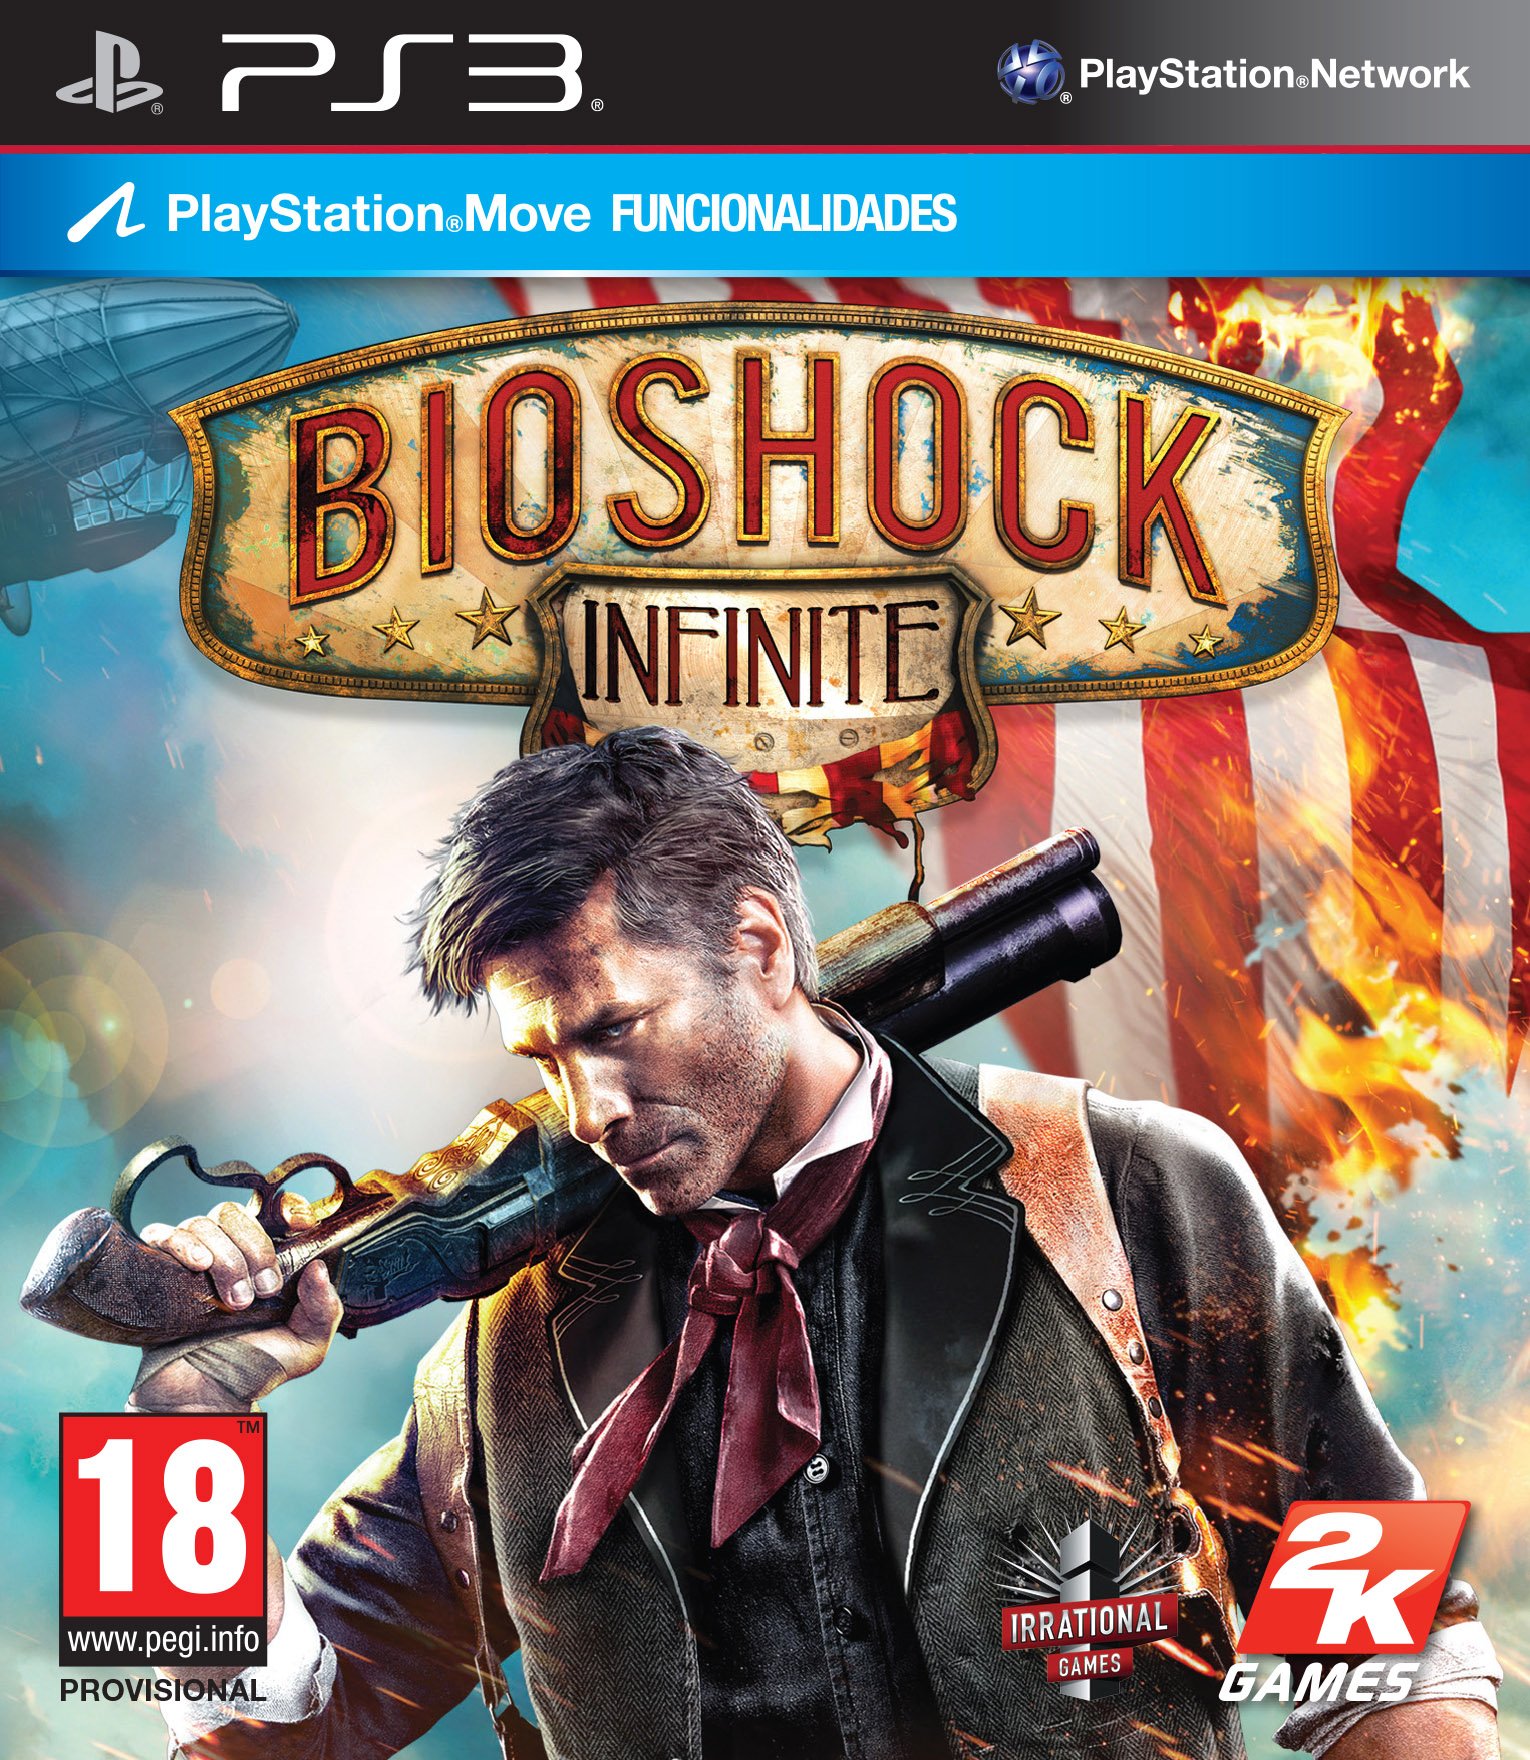 Caratula de Bioshock Infinite para PlayStation 3